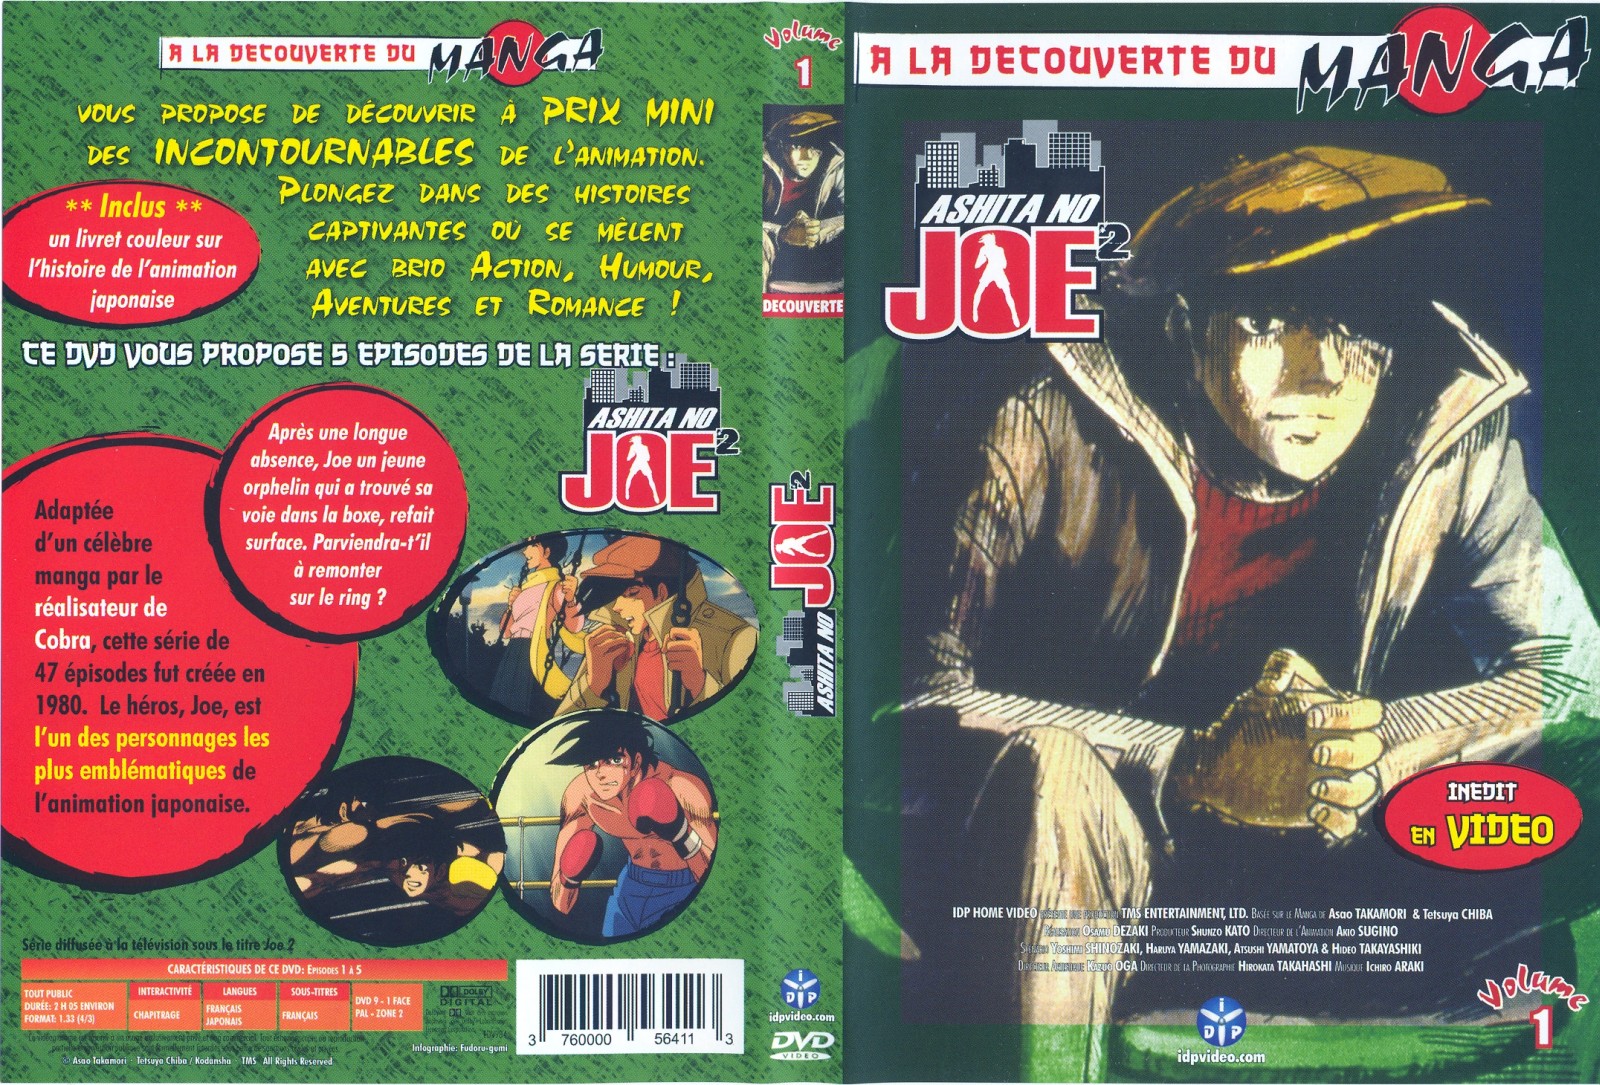 Jaquette DVD Ashita No Joe 2 vol 1